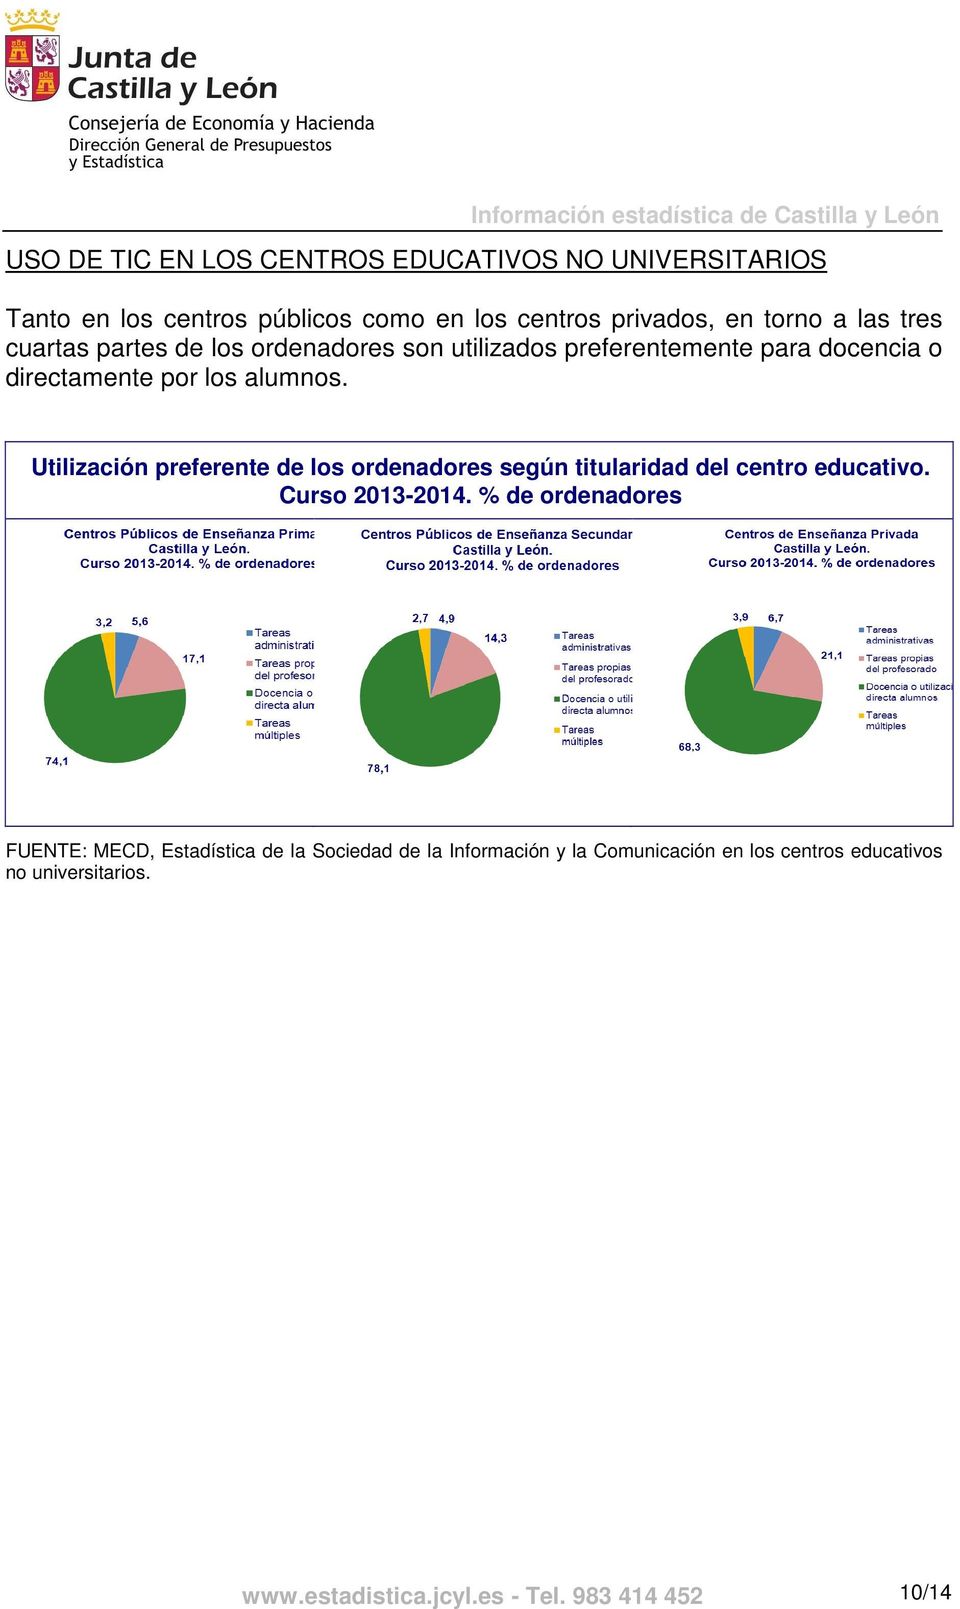 Utilización preferente de los ordenadores según titularidad del centro educativo. Curso 2013-2014.